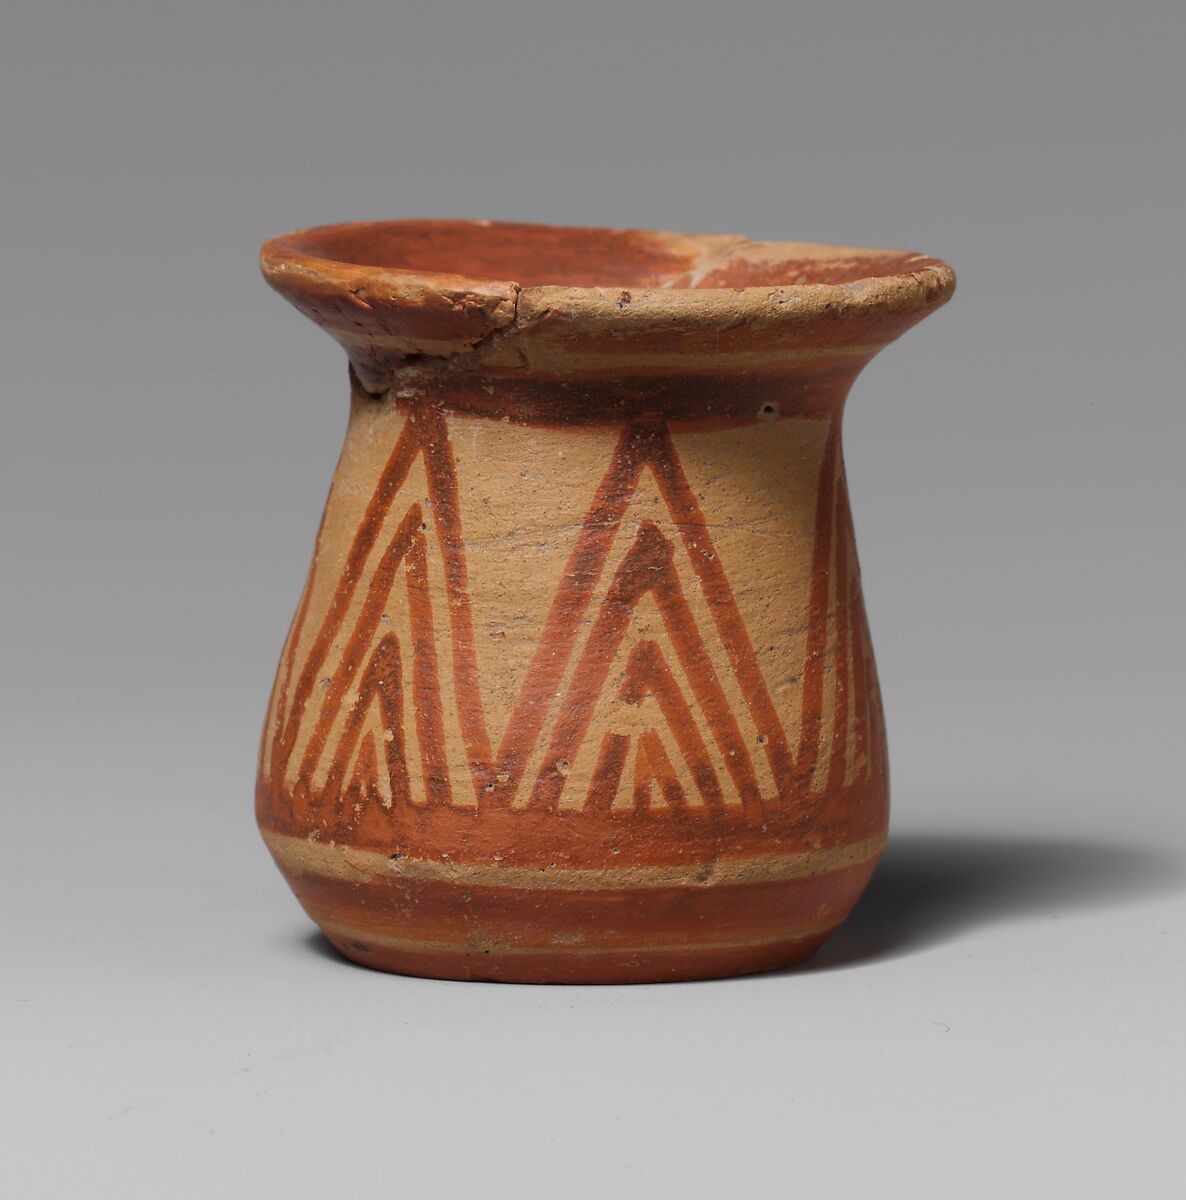 Terracotta juglet, Terracotta, Greek, Attic 